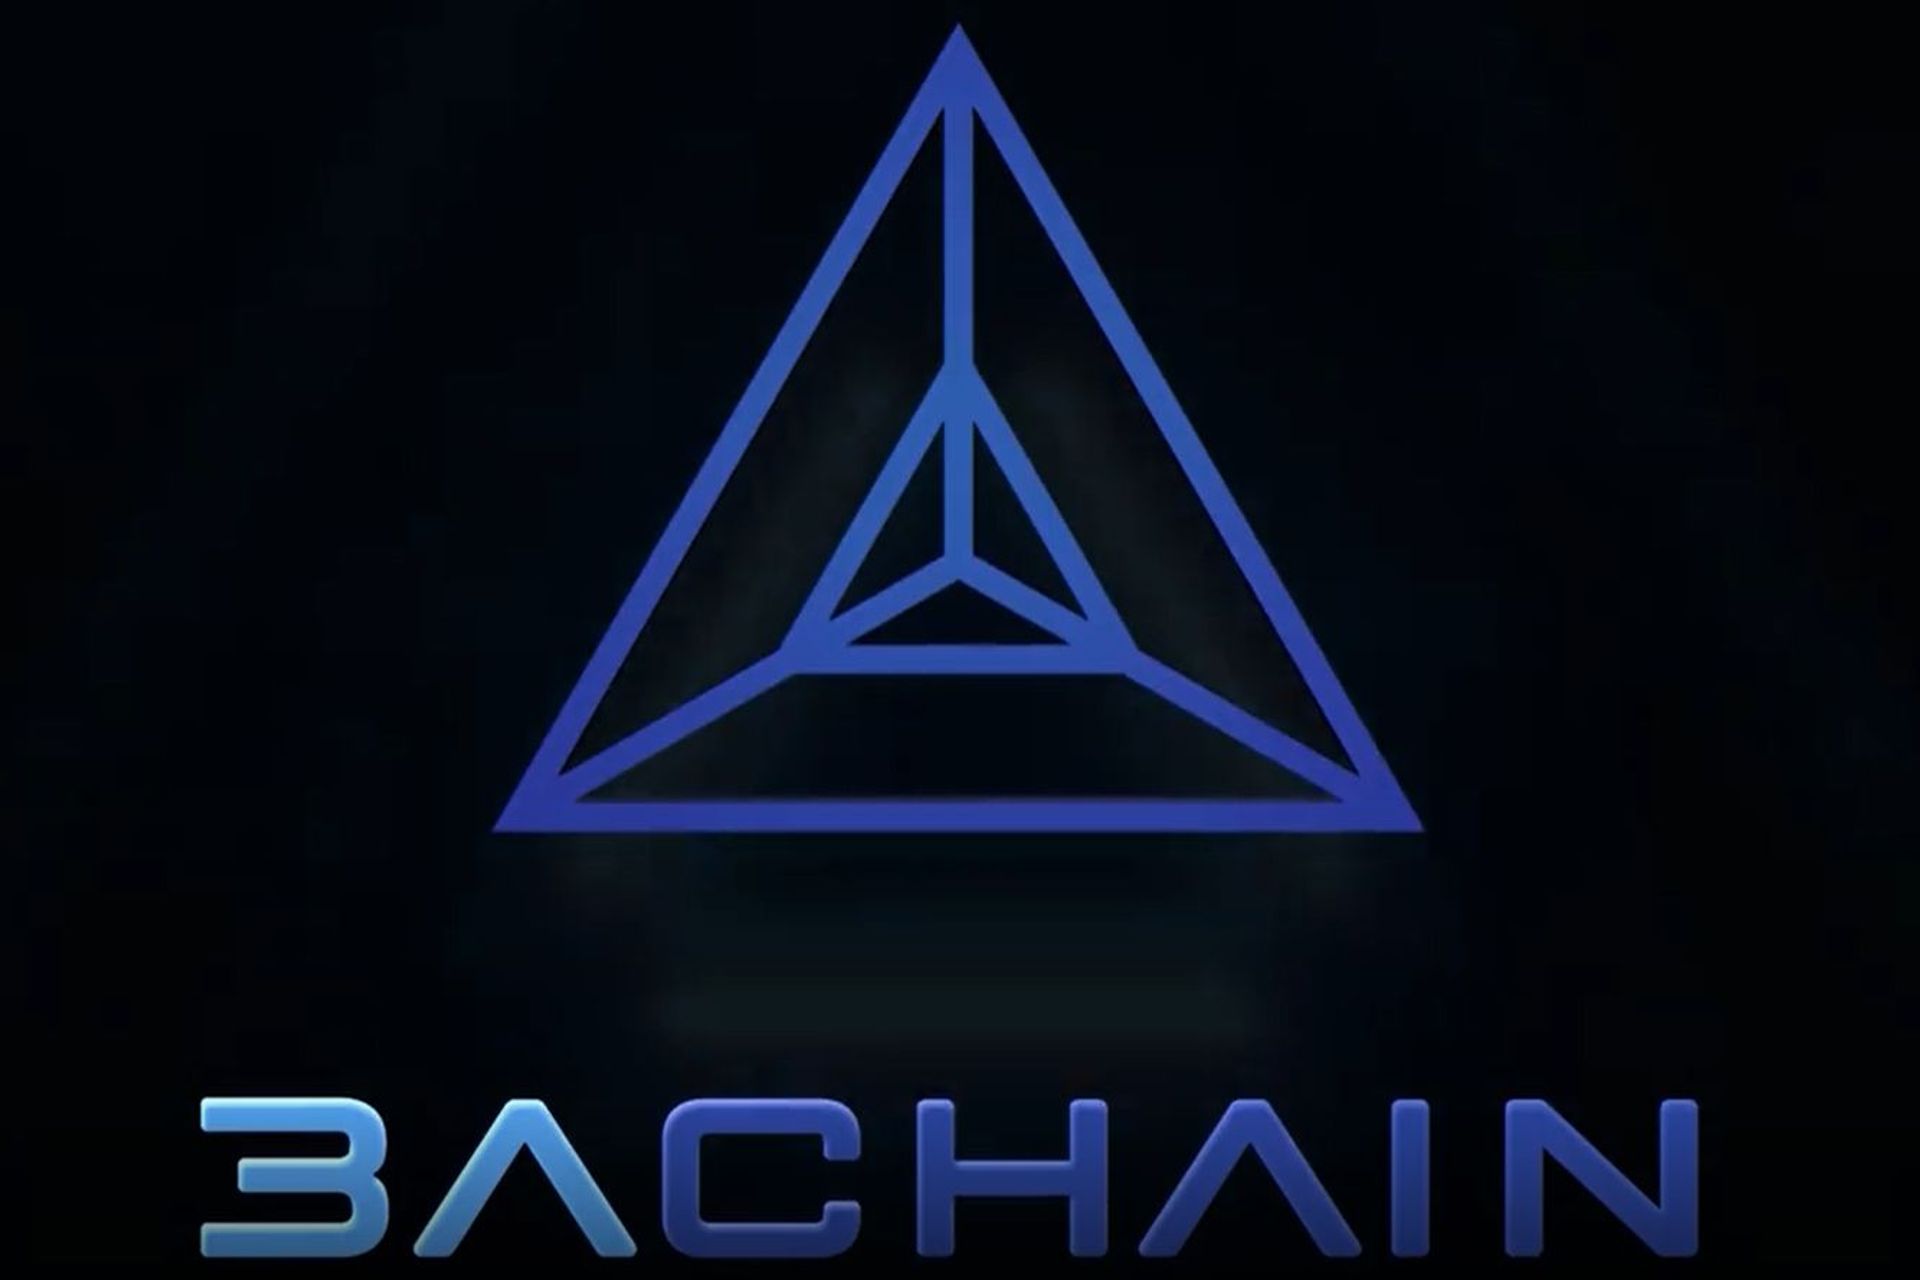 Il logotipo della blockchain A3chain lanciata dalla Città di Lugano